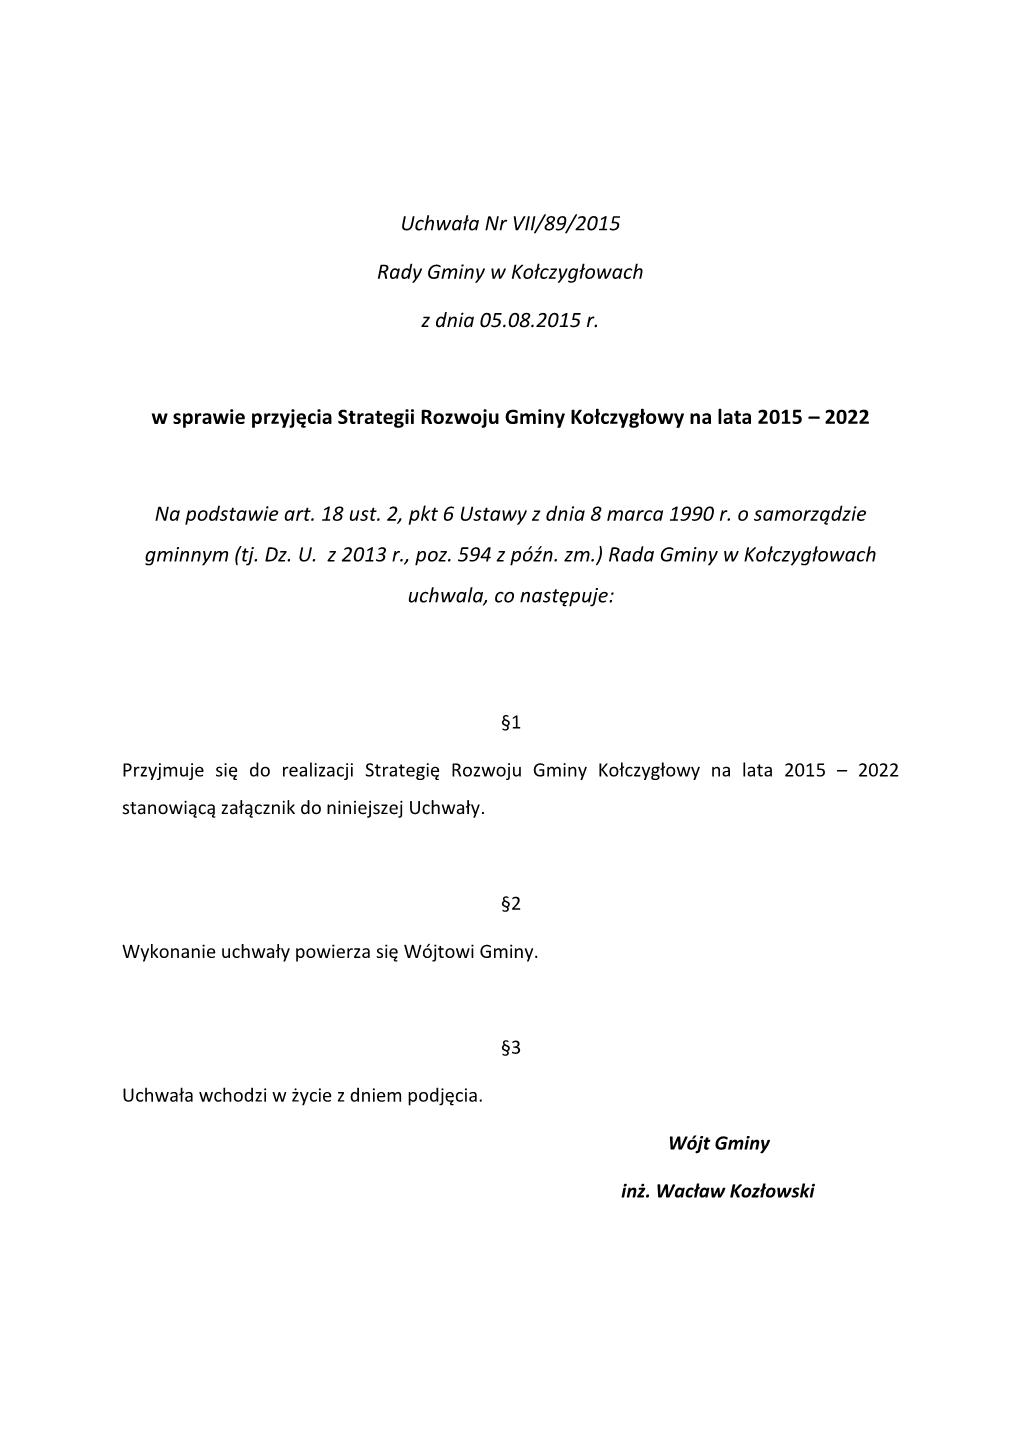 Uchwała Nr VII/89/2015 Rady Gminy W Kołczygłowach Z Dnia 05.08.2015